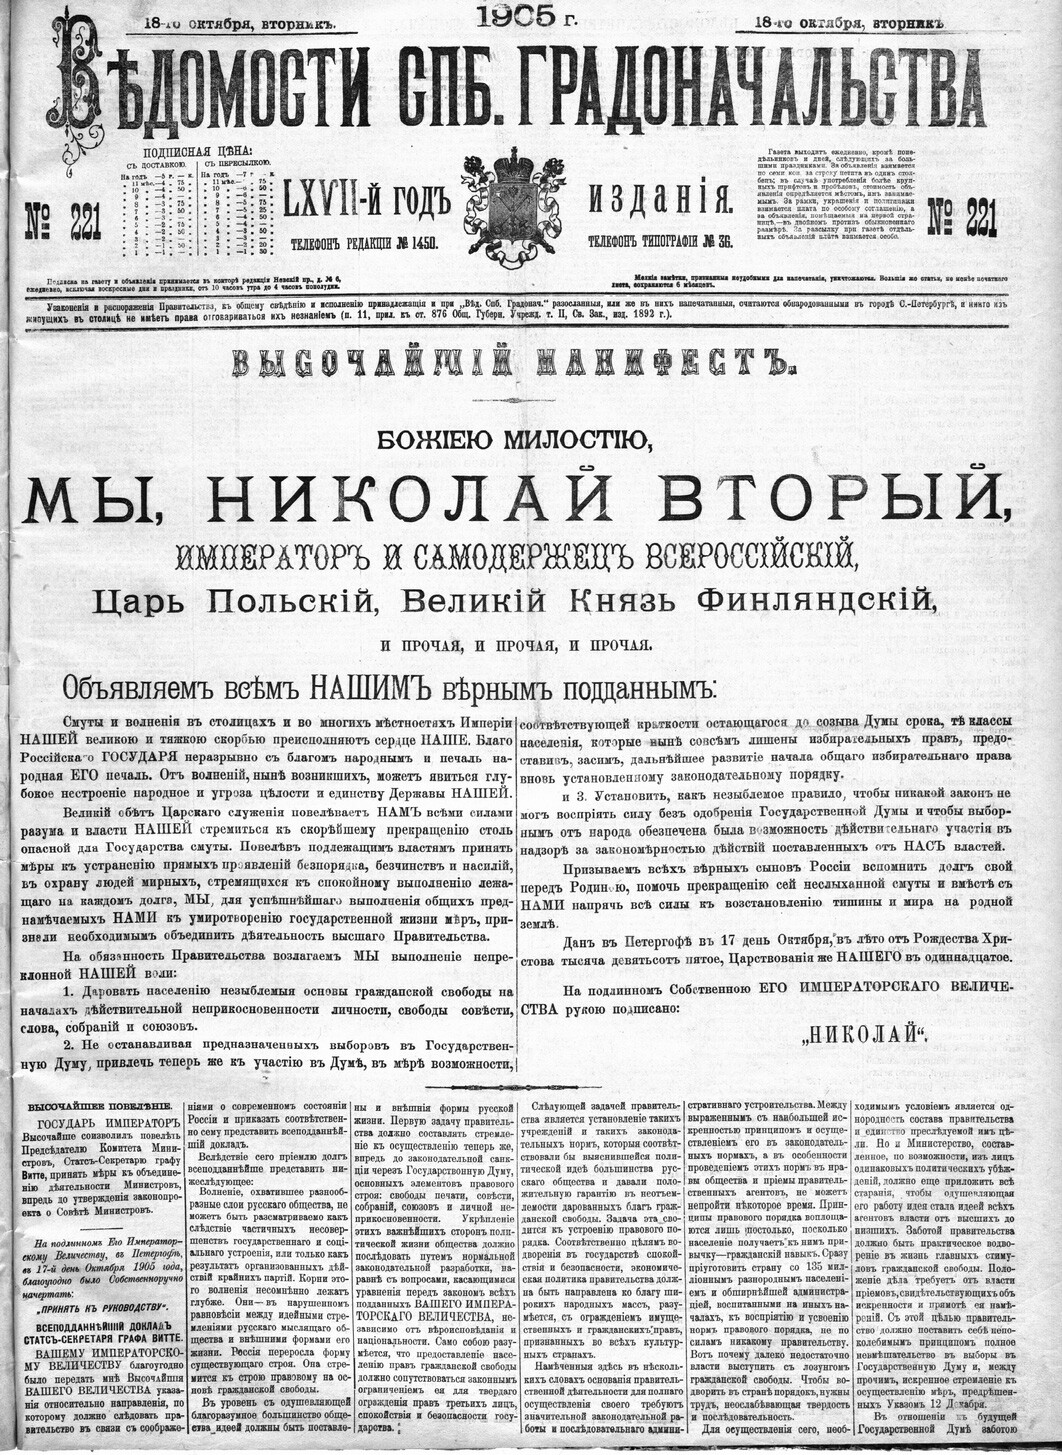 Das Oktobermanifest  vom 17. Oktober 1905 war die Antwort von Nikolaus II. auf die Unruhen und Streiks während der Russischen Revolution 1905.